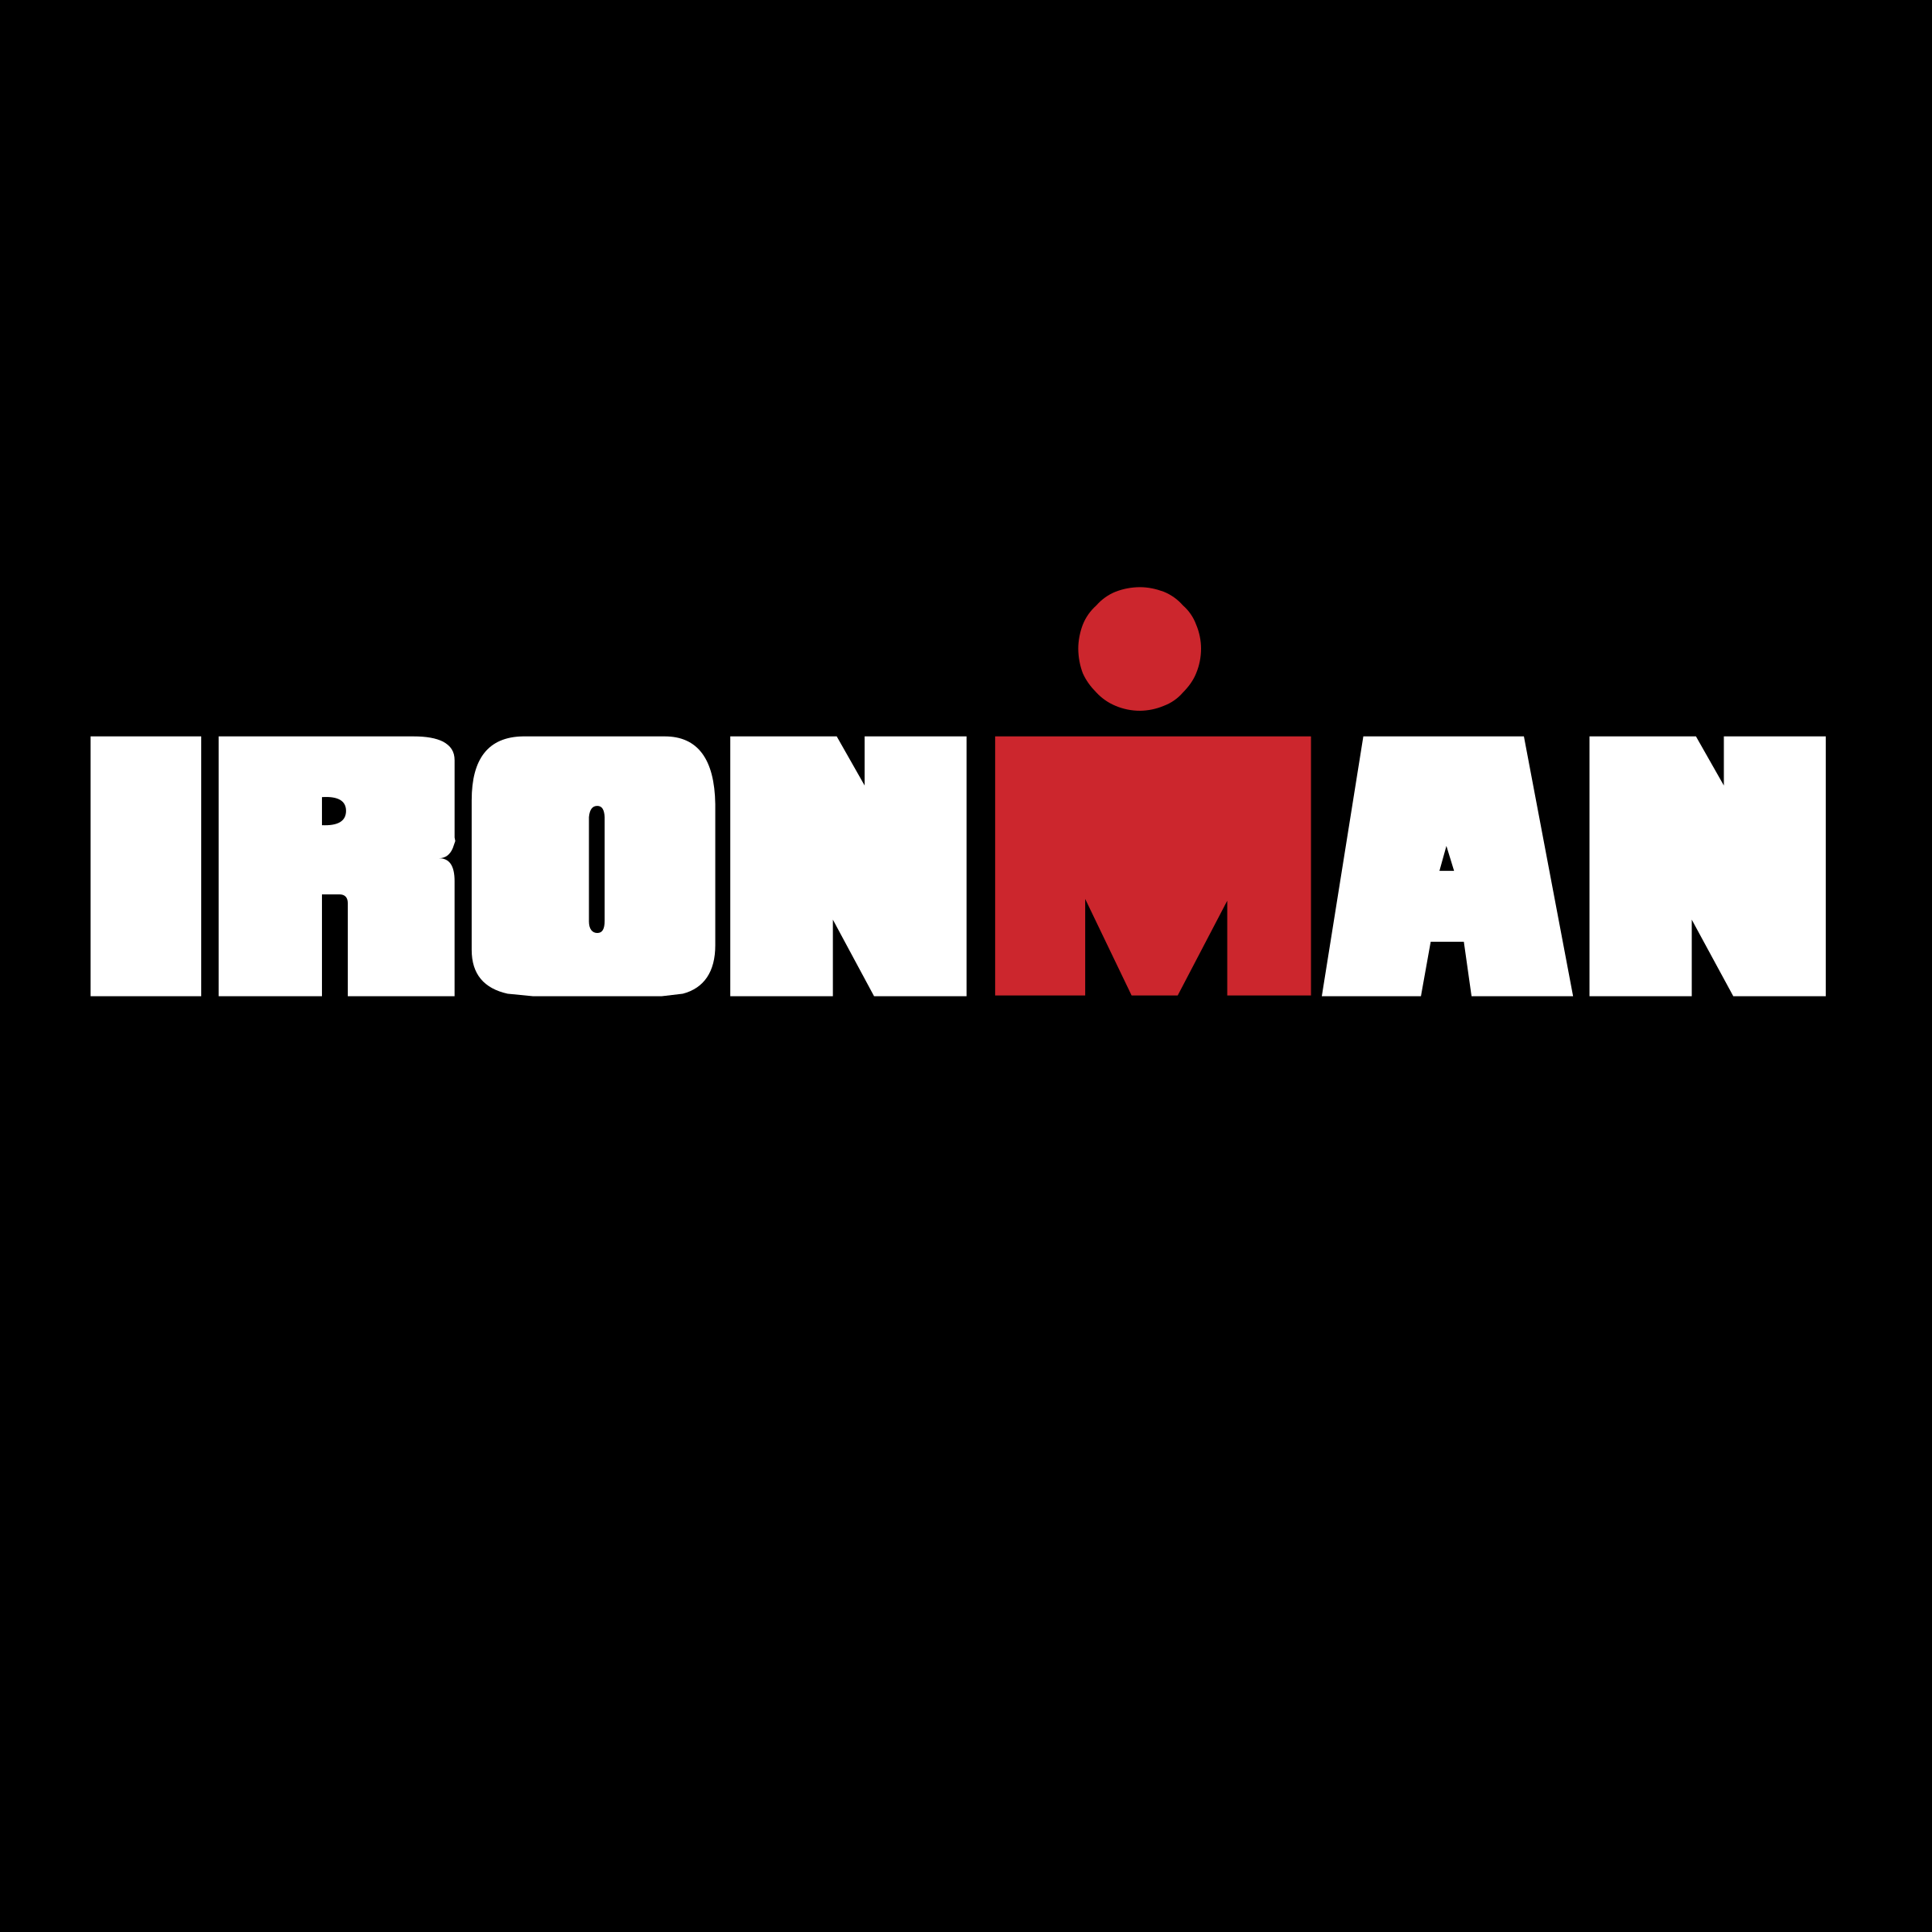 iron man logo vector at vectorifiedcom collection of iron man logo